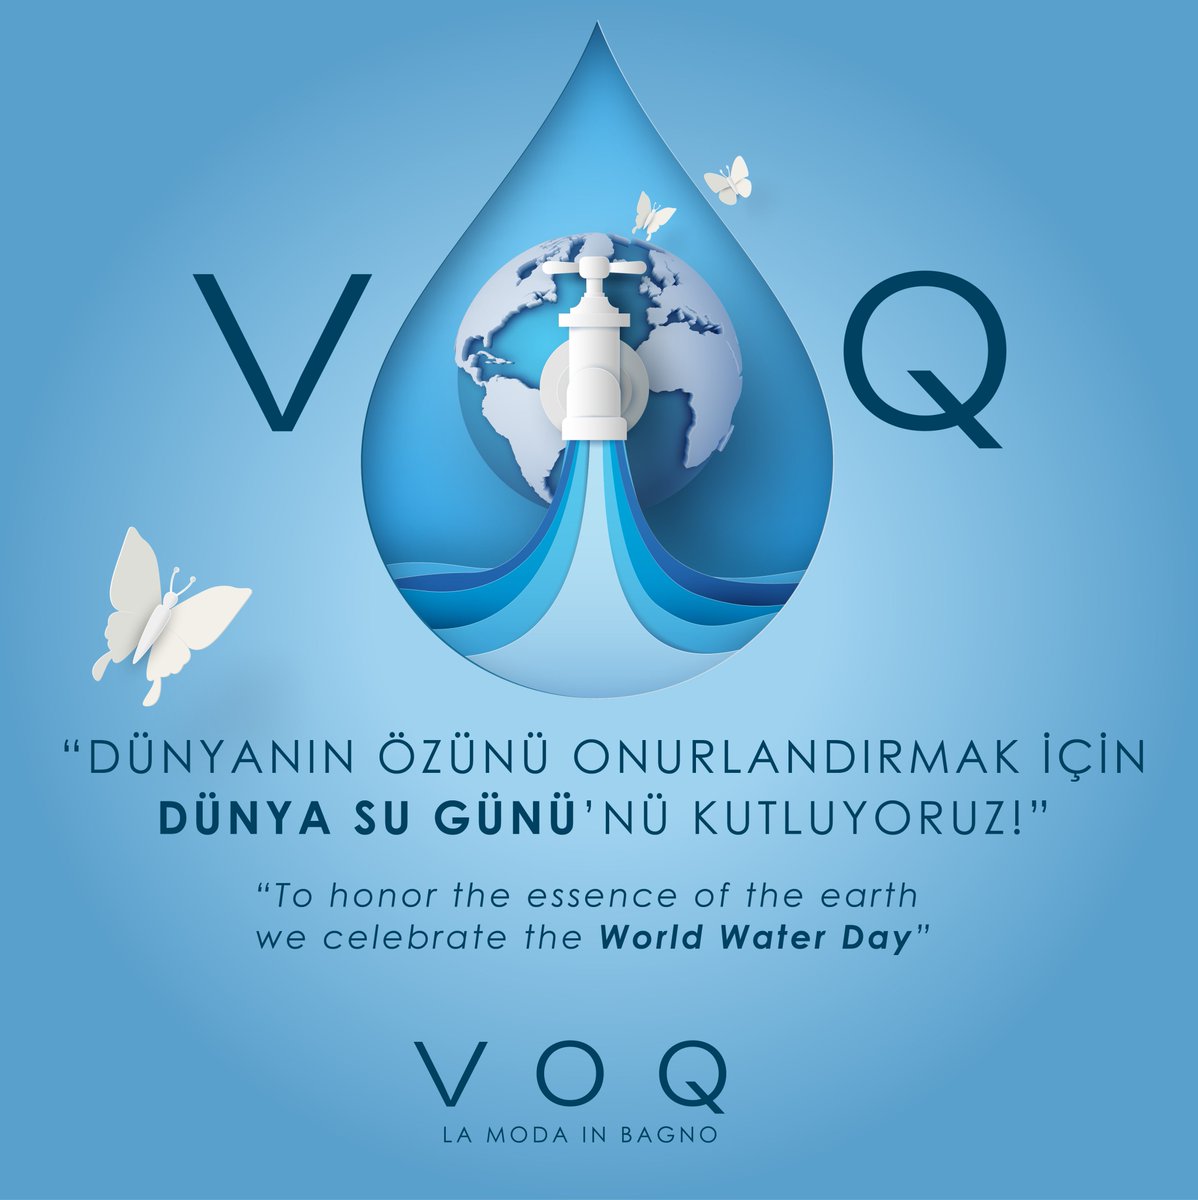 Dünyanın özünü onurlandırmak için Dünya Su Günü’nü Kutluyoruz! To honor the essence of the earth, we celebrate the World Water Day! #voq #voqbagno #lamodainbagno #arredobagno #bathroomfurniture #banyomobilyası #DünyaSuGünü #WorldWaterDay